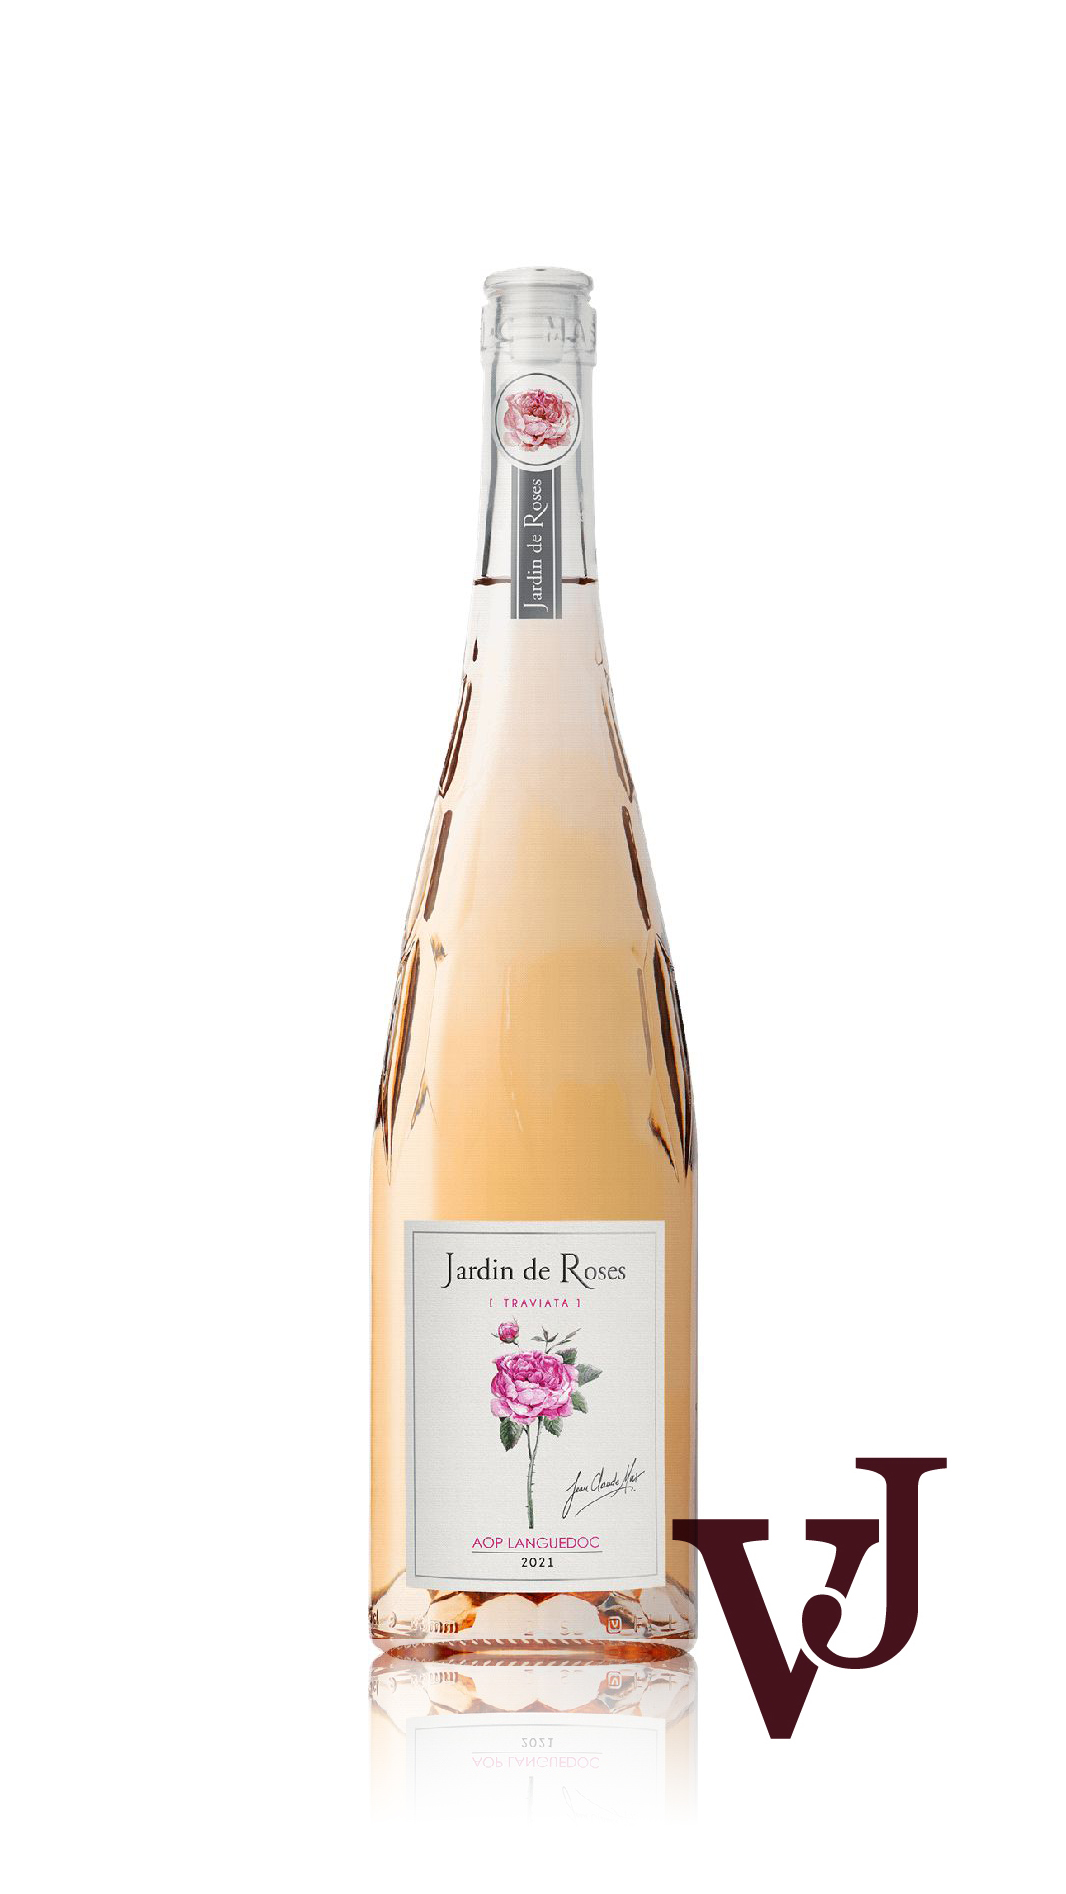 Rosé Vin - Paul Mas artikel nummer 5574301 från producenten Domaines Paul Mas från området Frankrike